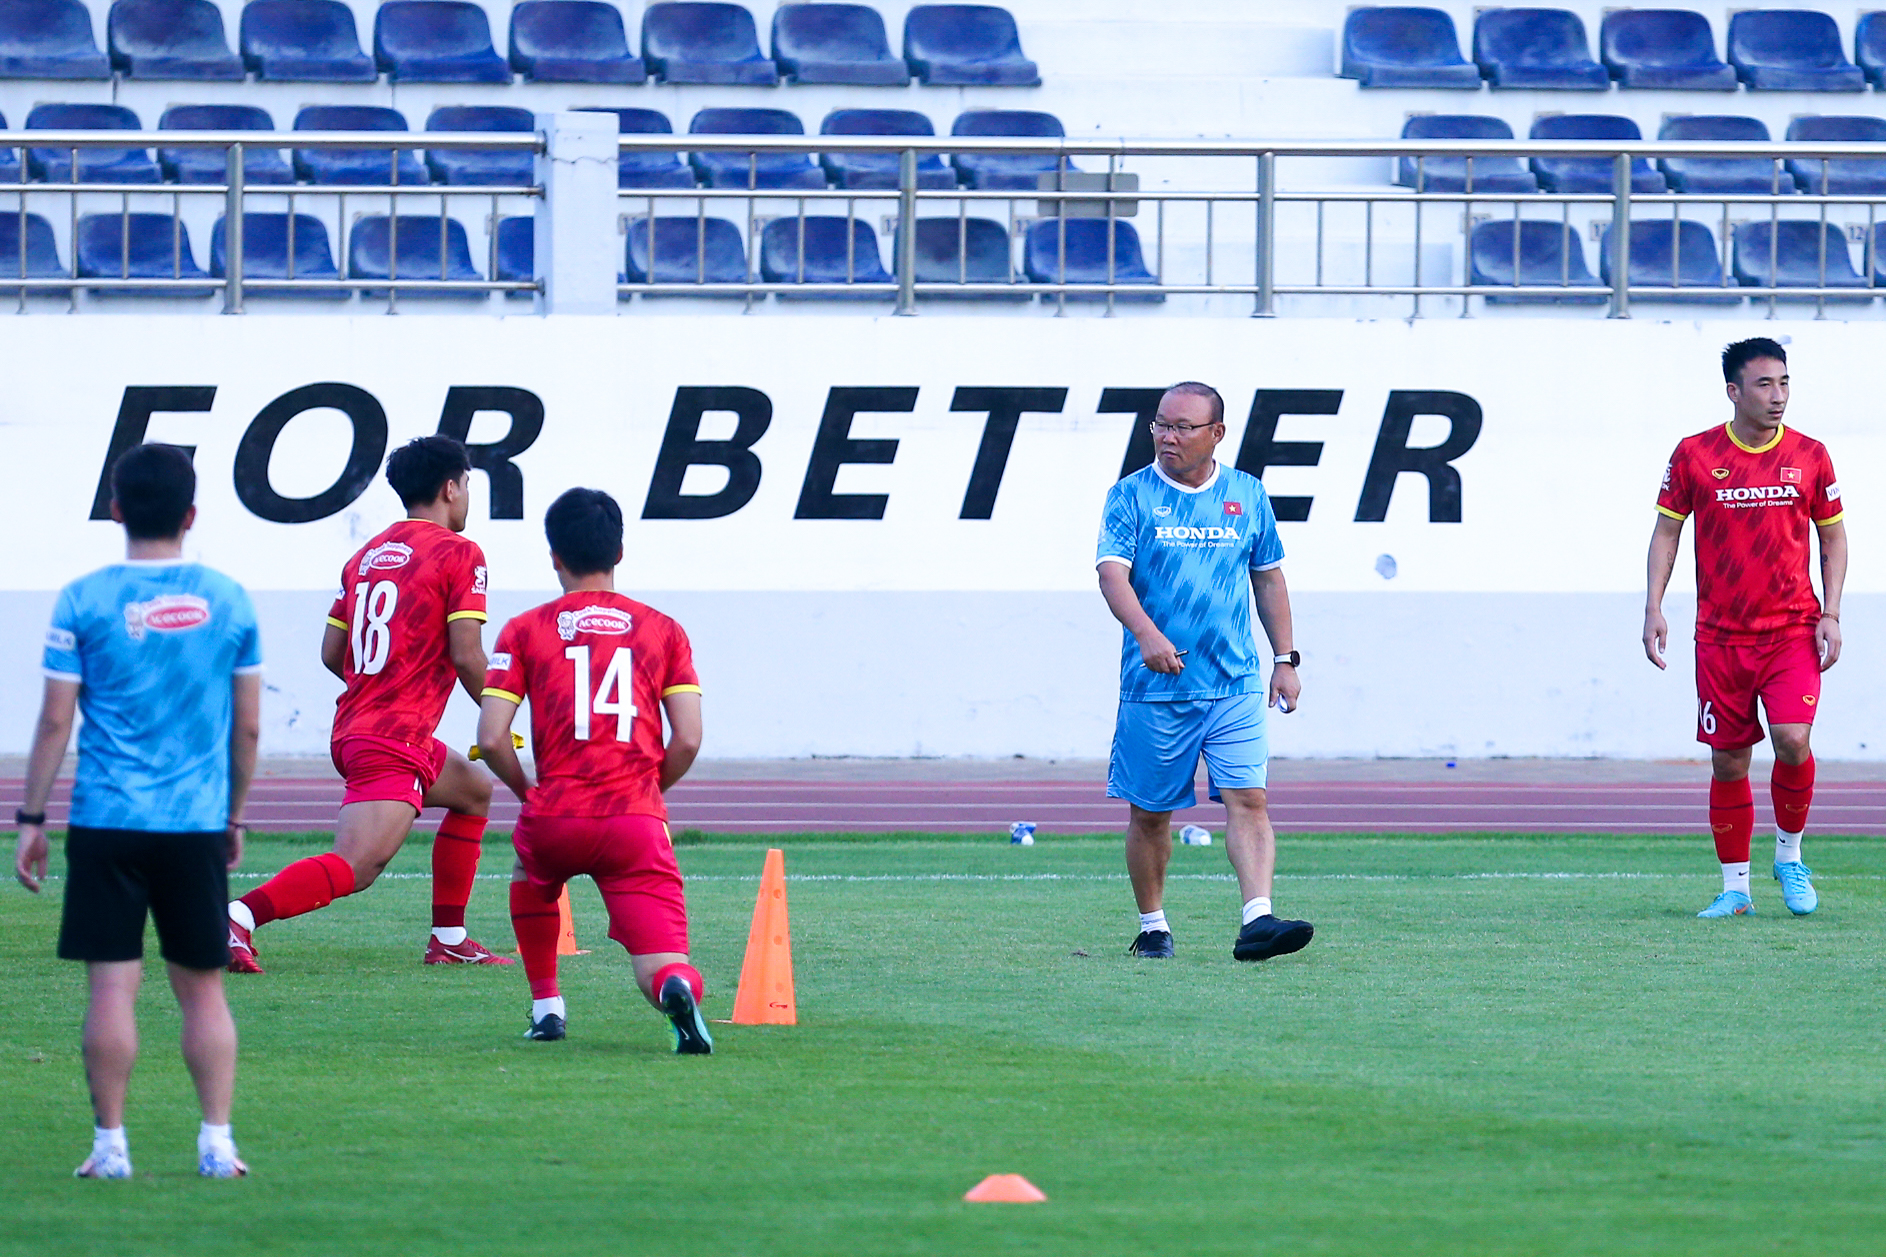 Chiều 9.12, đội tuyển Việt Nam có buổi tập trên sân vận động Bà Rịa. Đây là buổi tập nằm trong chuyến tập huấn chuẩn bị cho AFF Cup 2022.